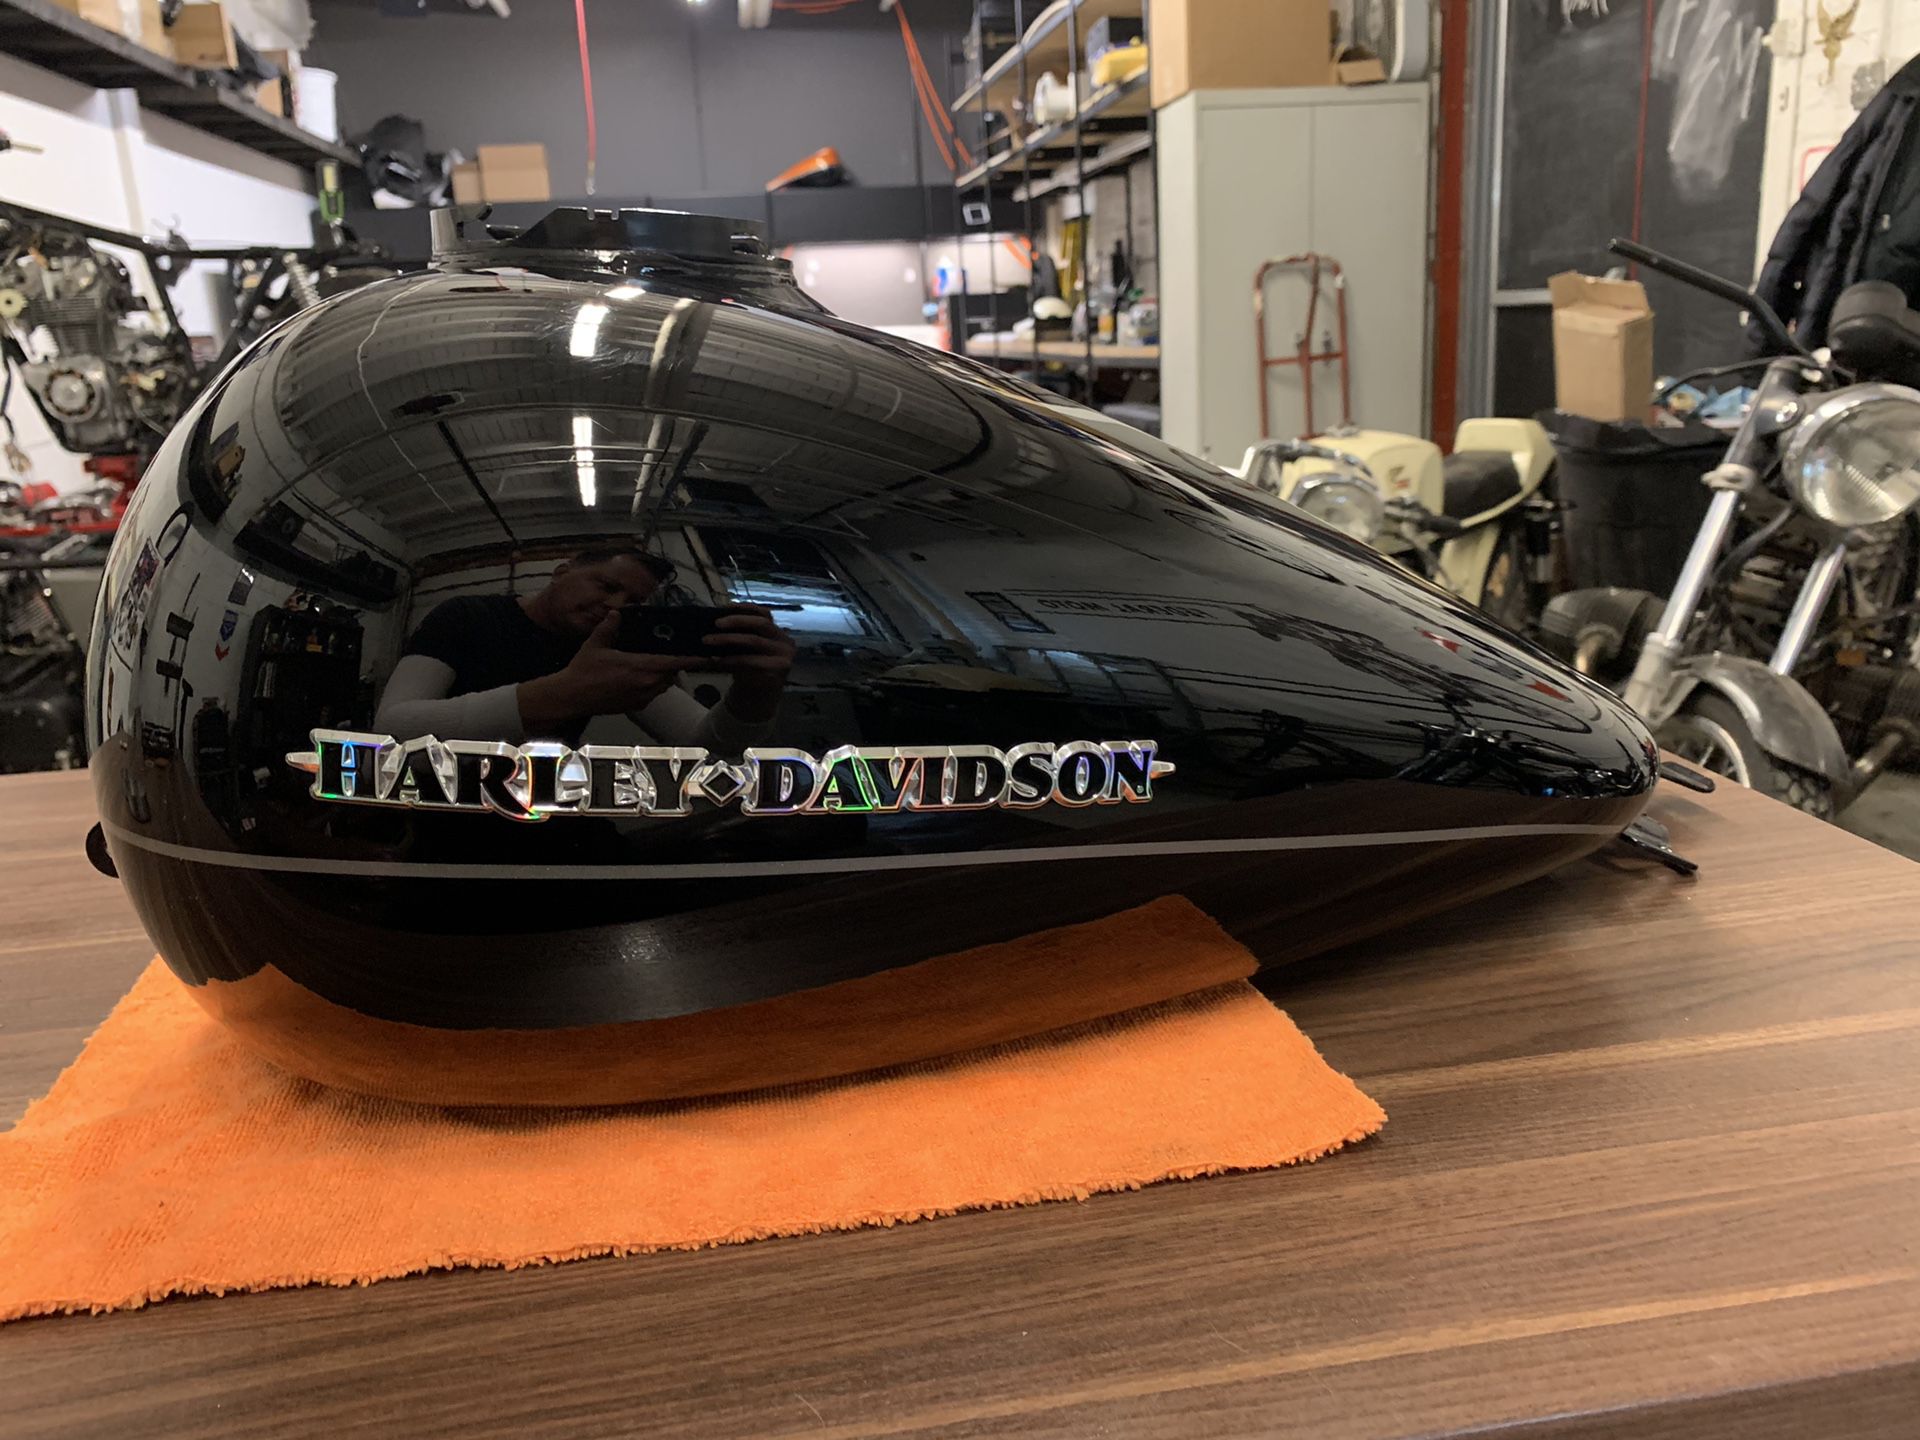 Harley Davidson OEM Touring Gas Tank Vivid Black